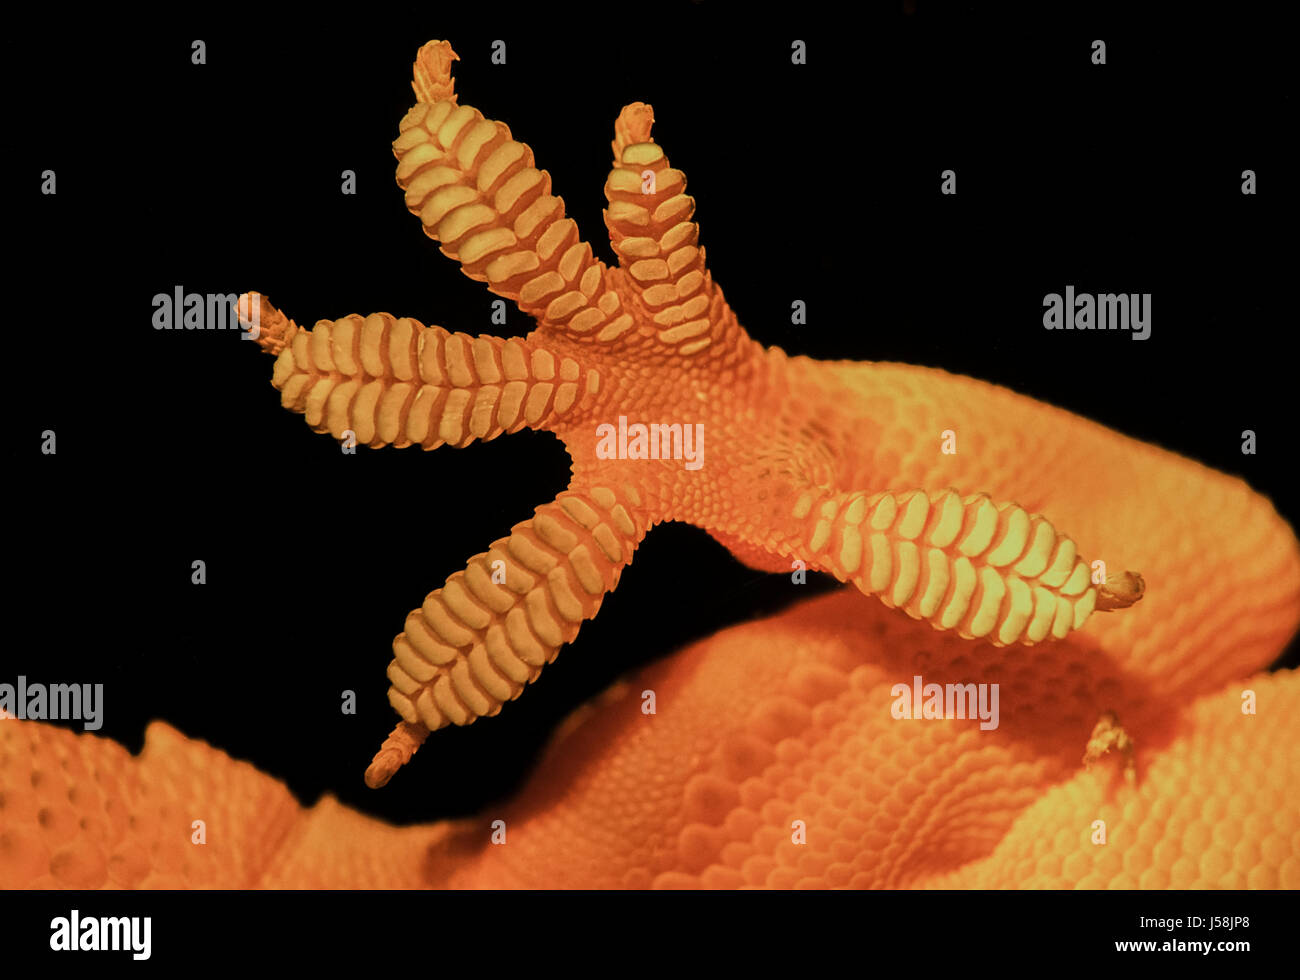 Detalle de Gecko, el pie y los dedos de los pies, Hemidactylus frenatus, en el panel de ventana, Rajasthan, India Foto de stock